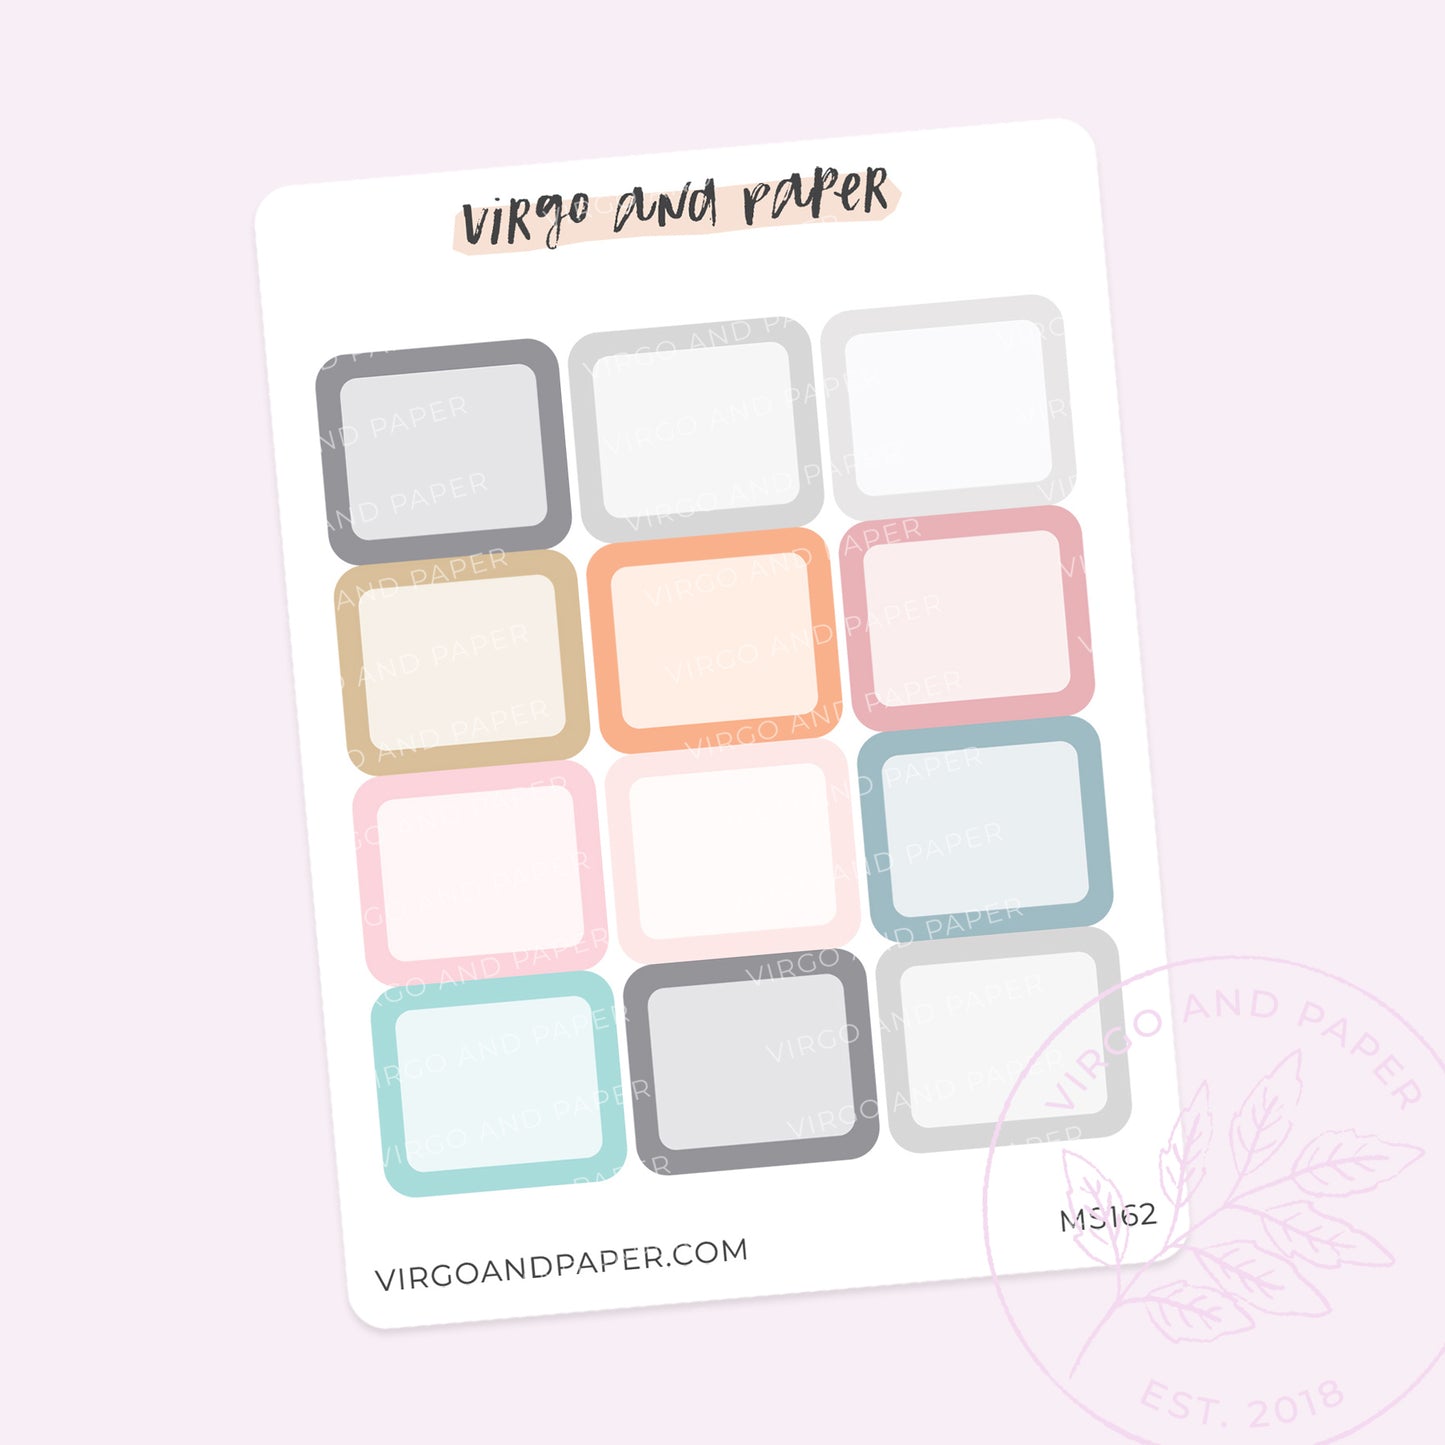 Tiny Event Boxes - Ashton's Favorite Colors